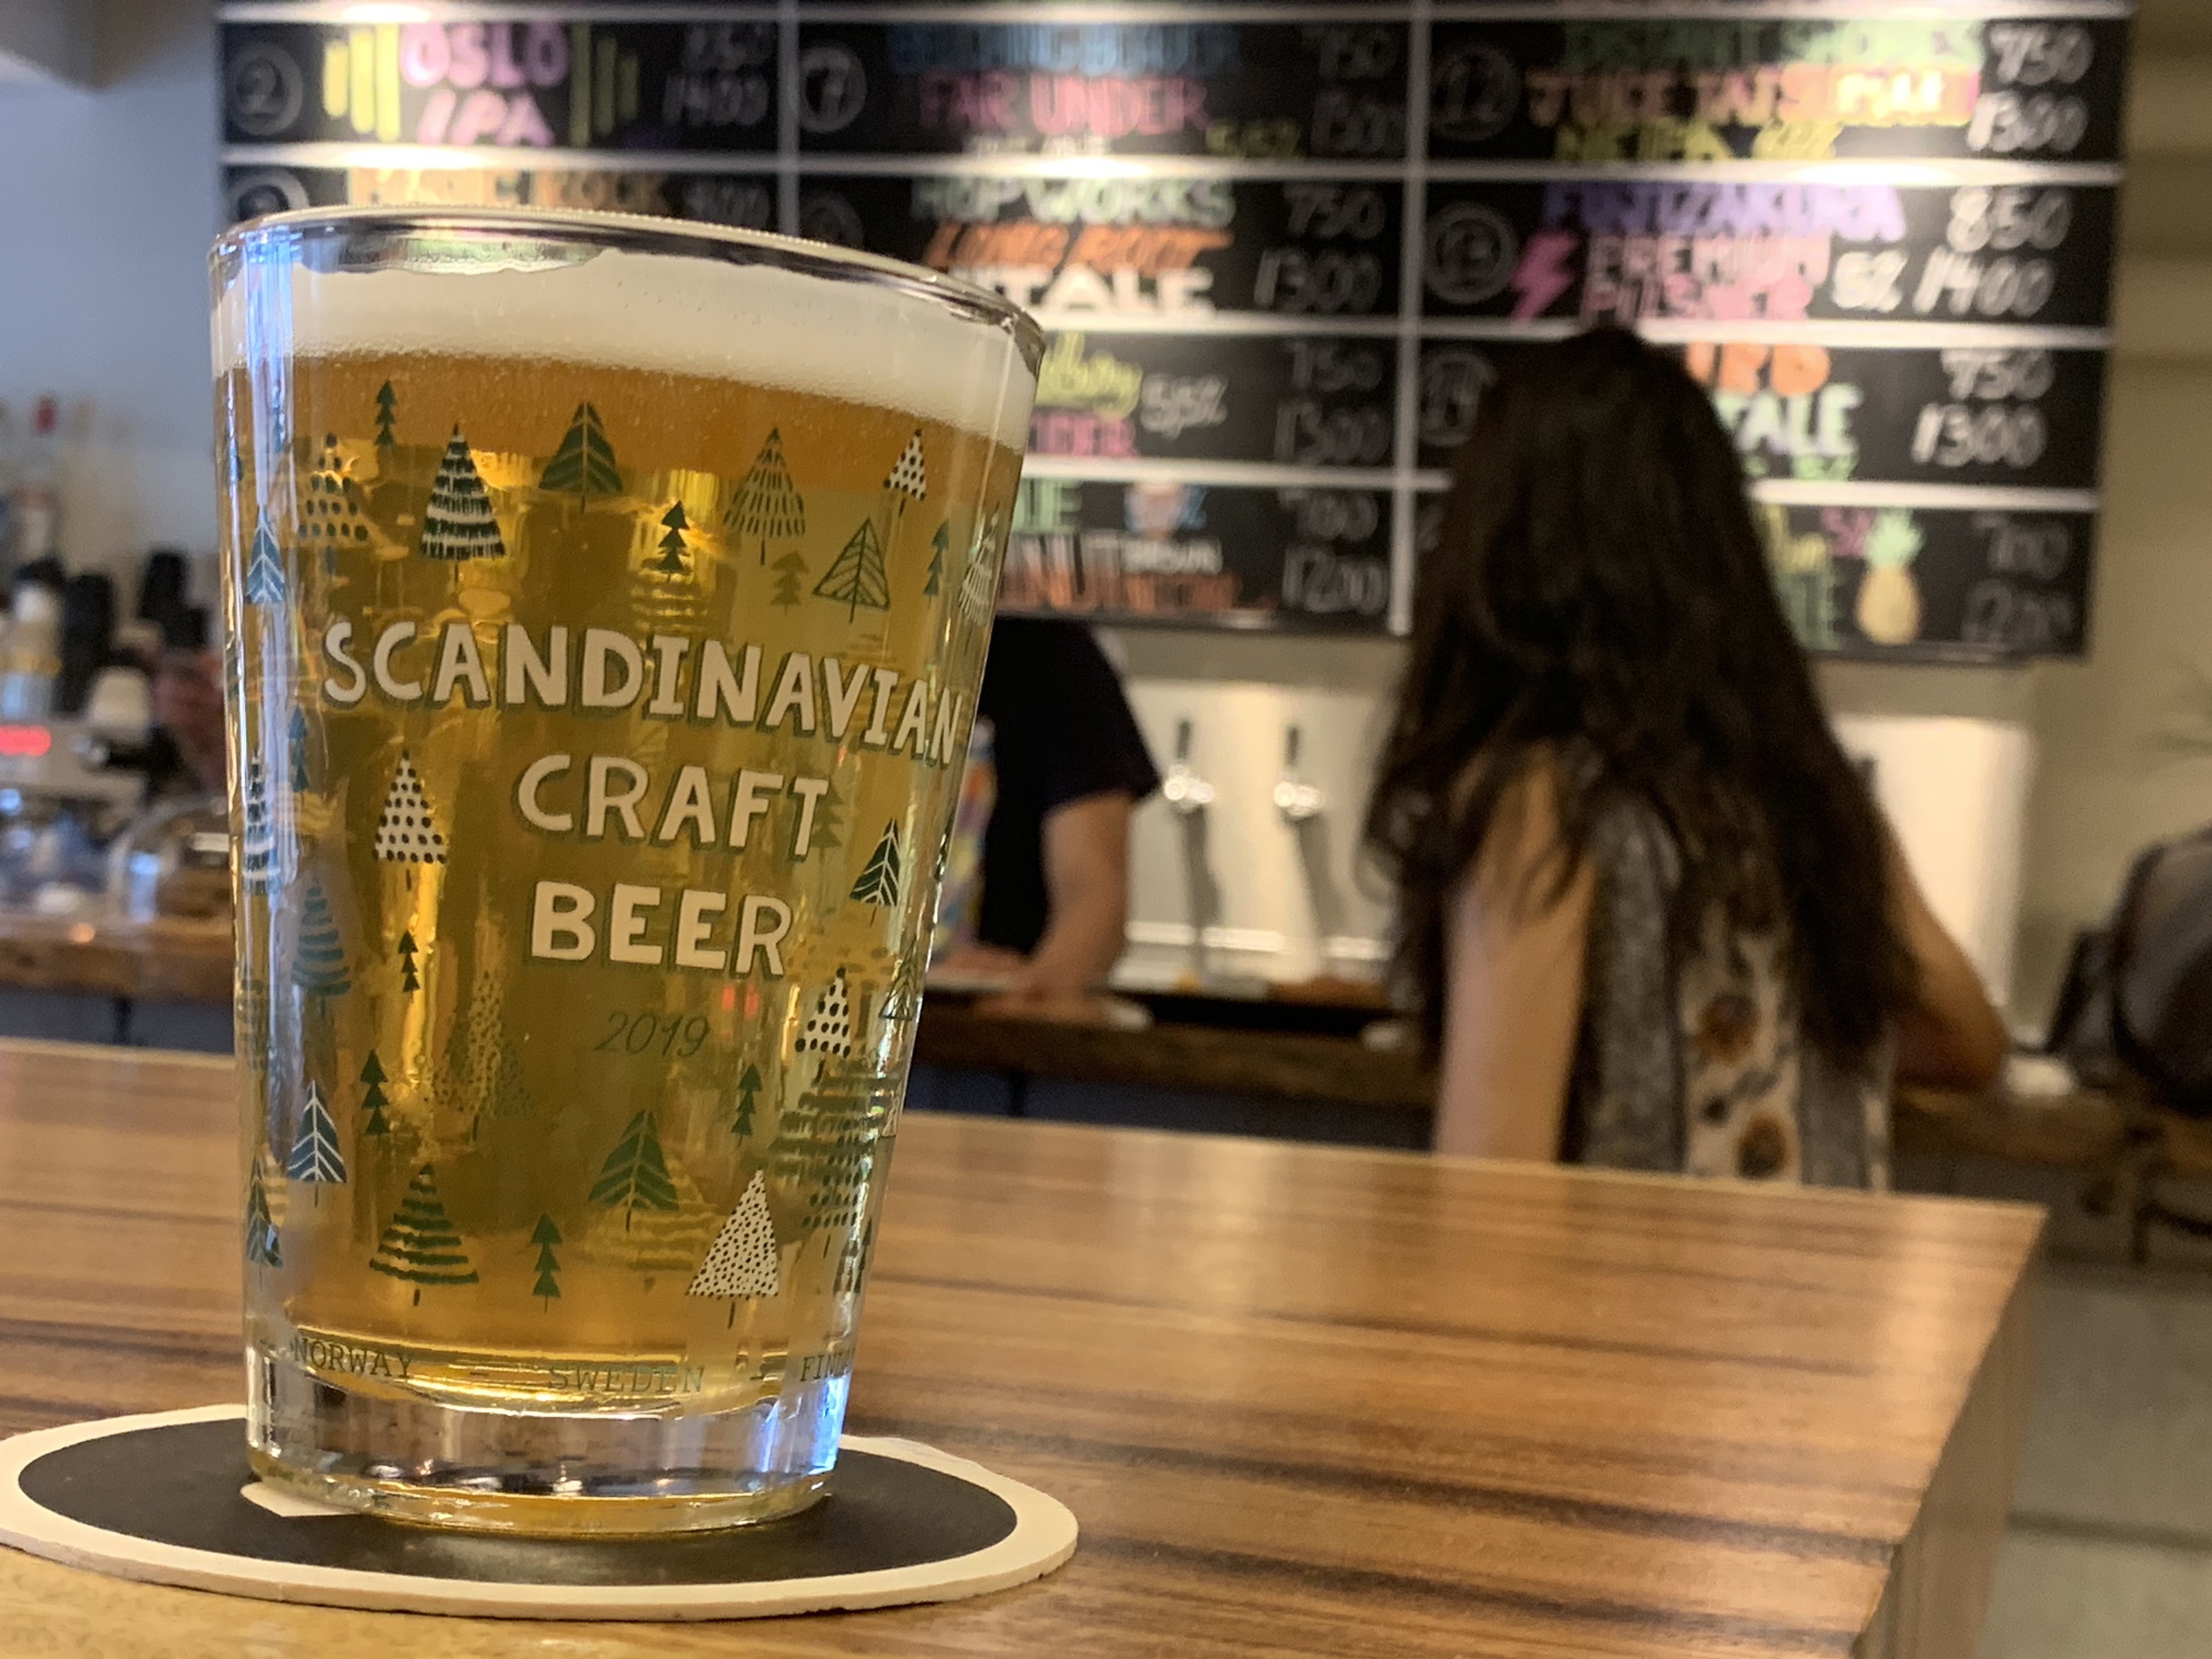 Event Report: Scandinavian Craft Beer Evening